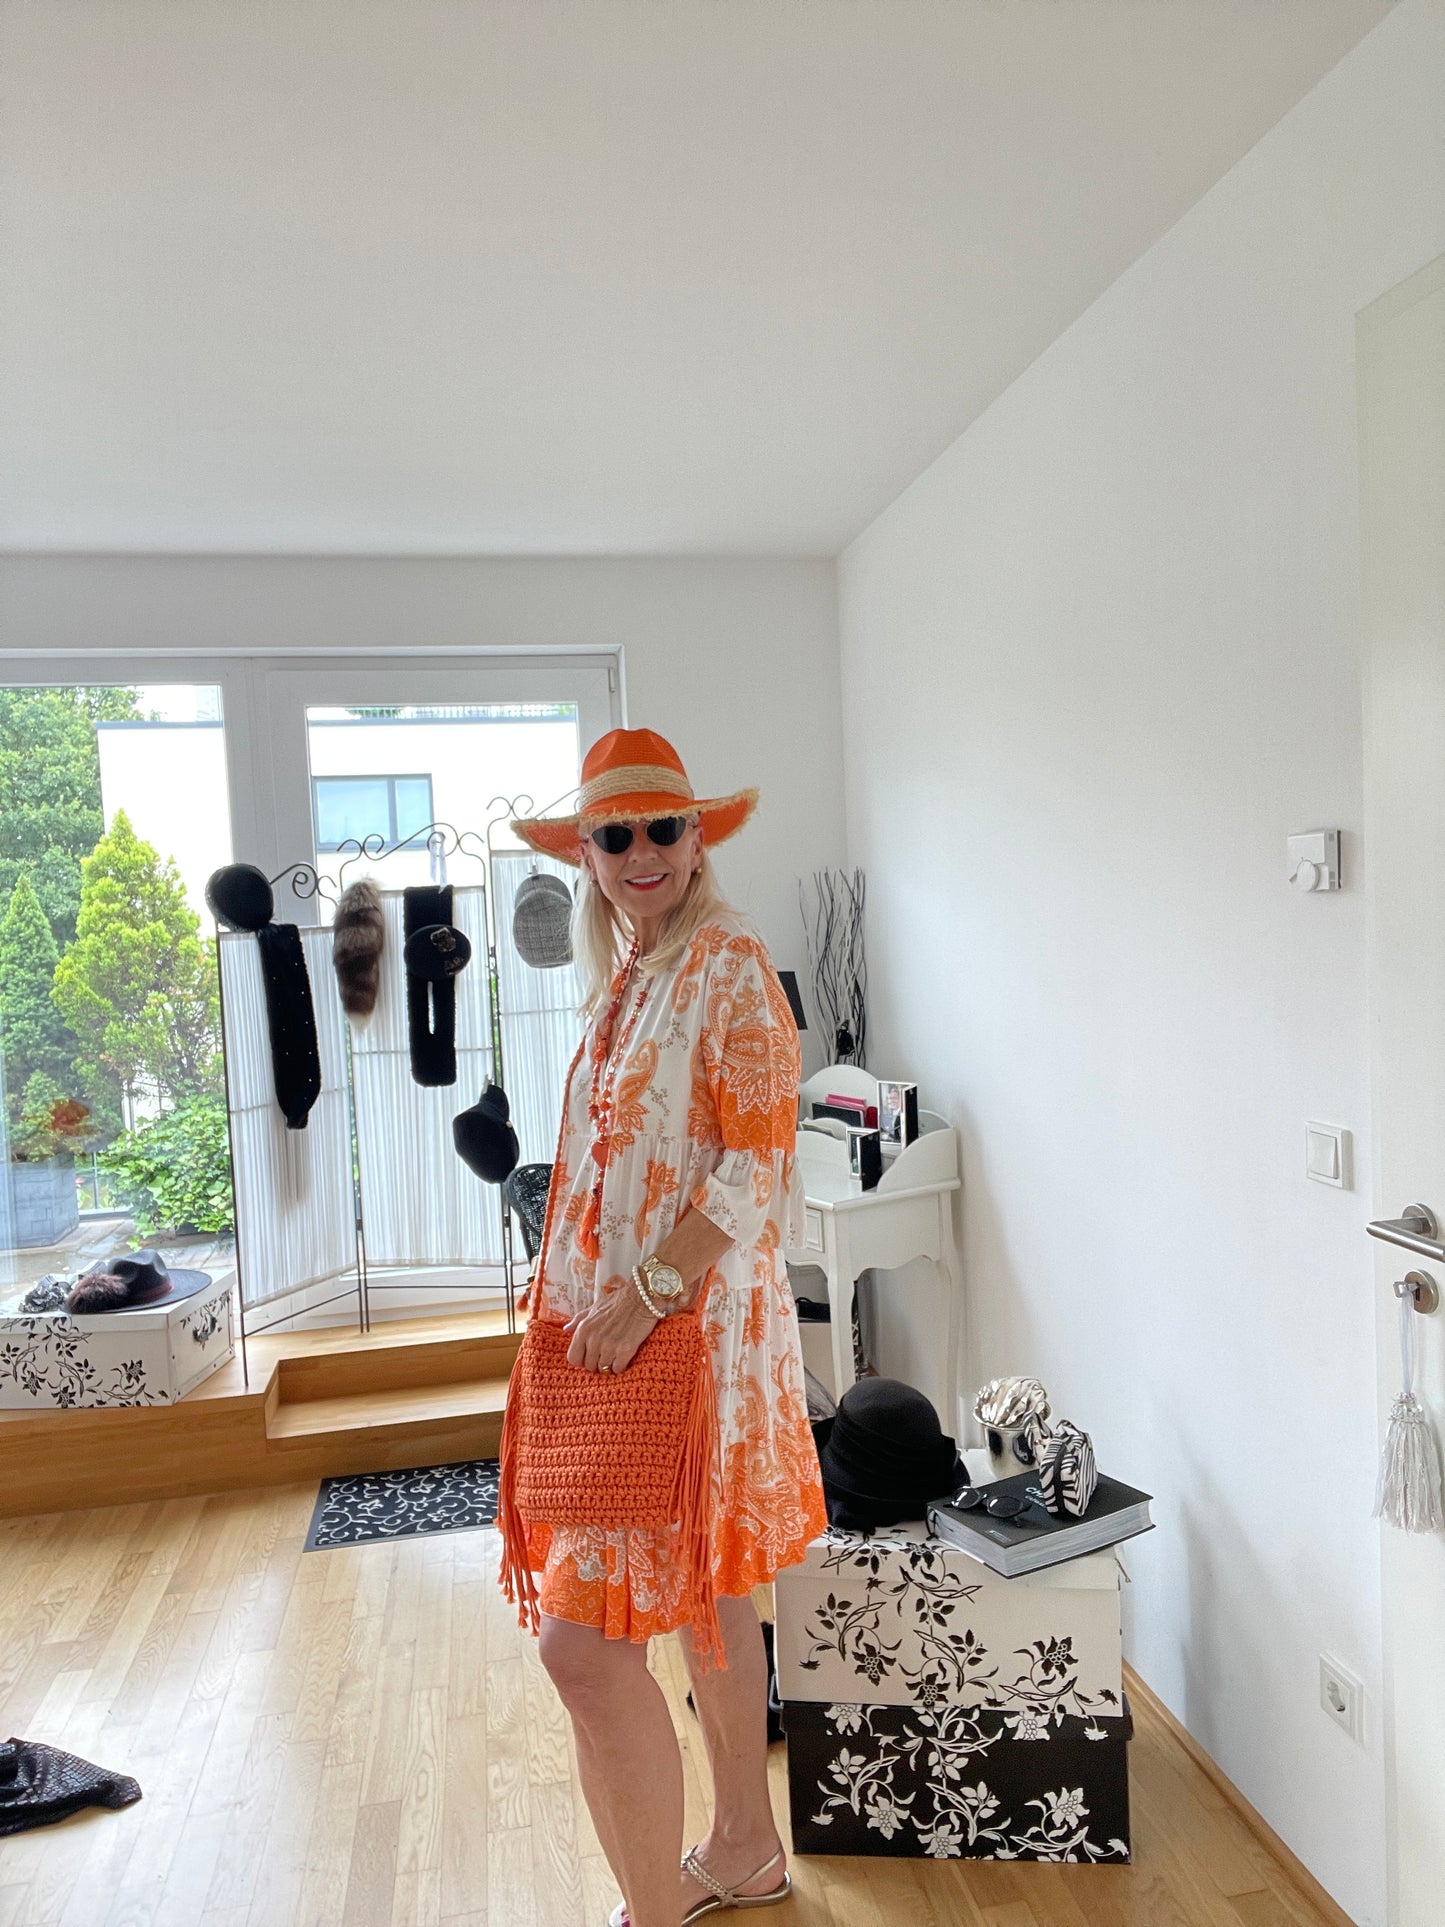 Tunika JASPER orange jetzt €69,90 im Outlet anstatt €89,90; geniales Sommeroutfit, perfekt auch für XXL-Größen